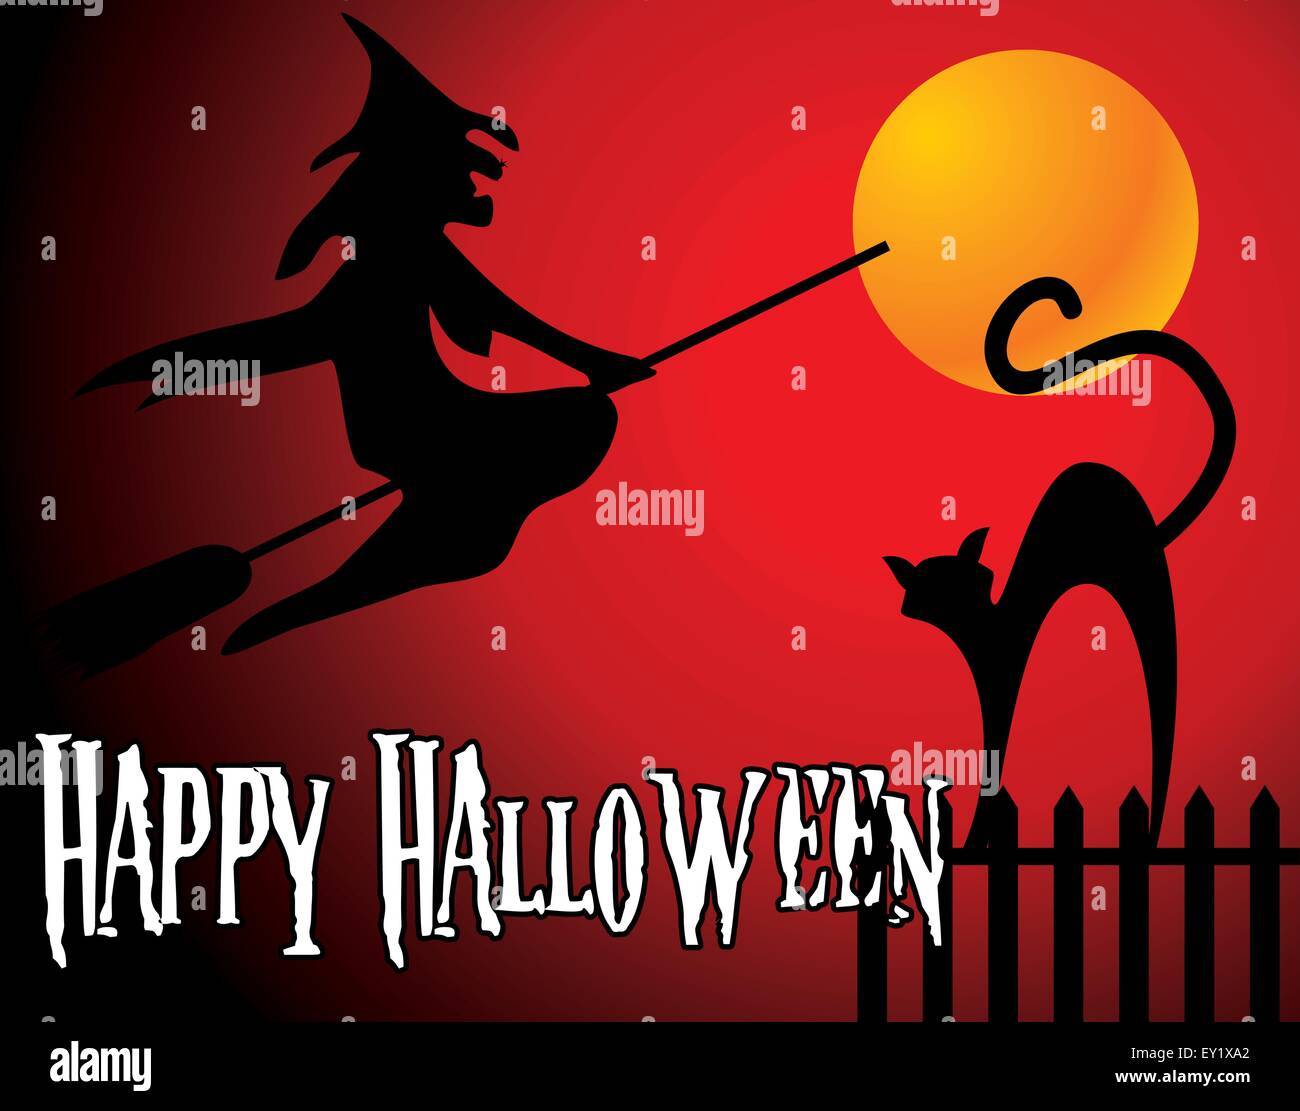 Fond d'halloween avec la pleine lune orange, sorcière et chat noir - vector illustration Illustration de Vecteur